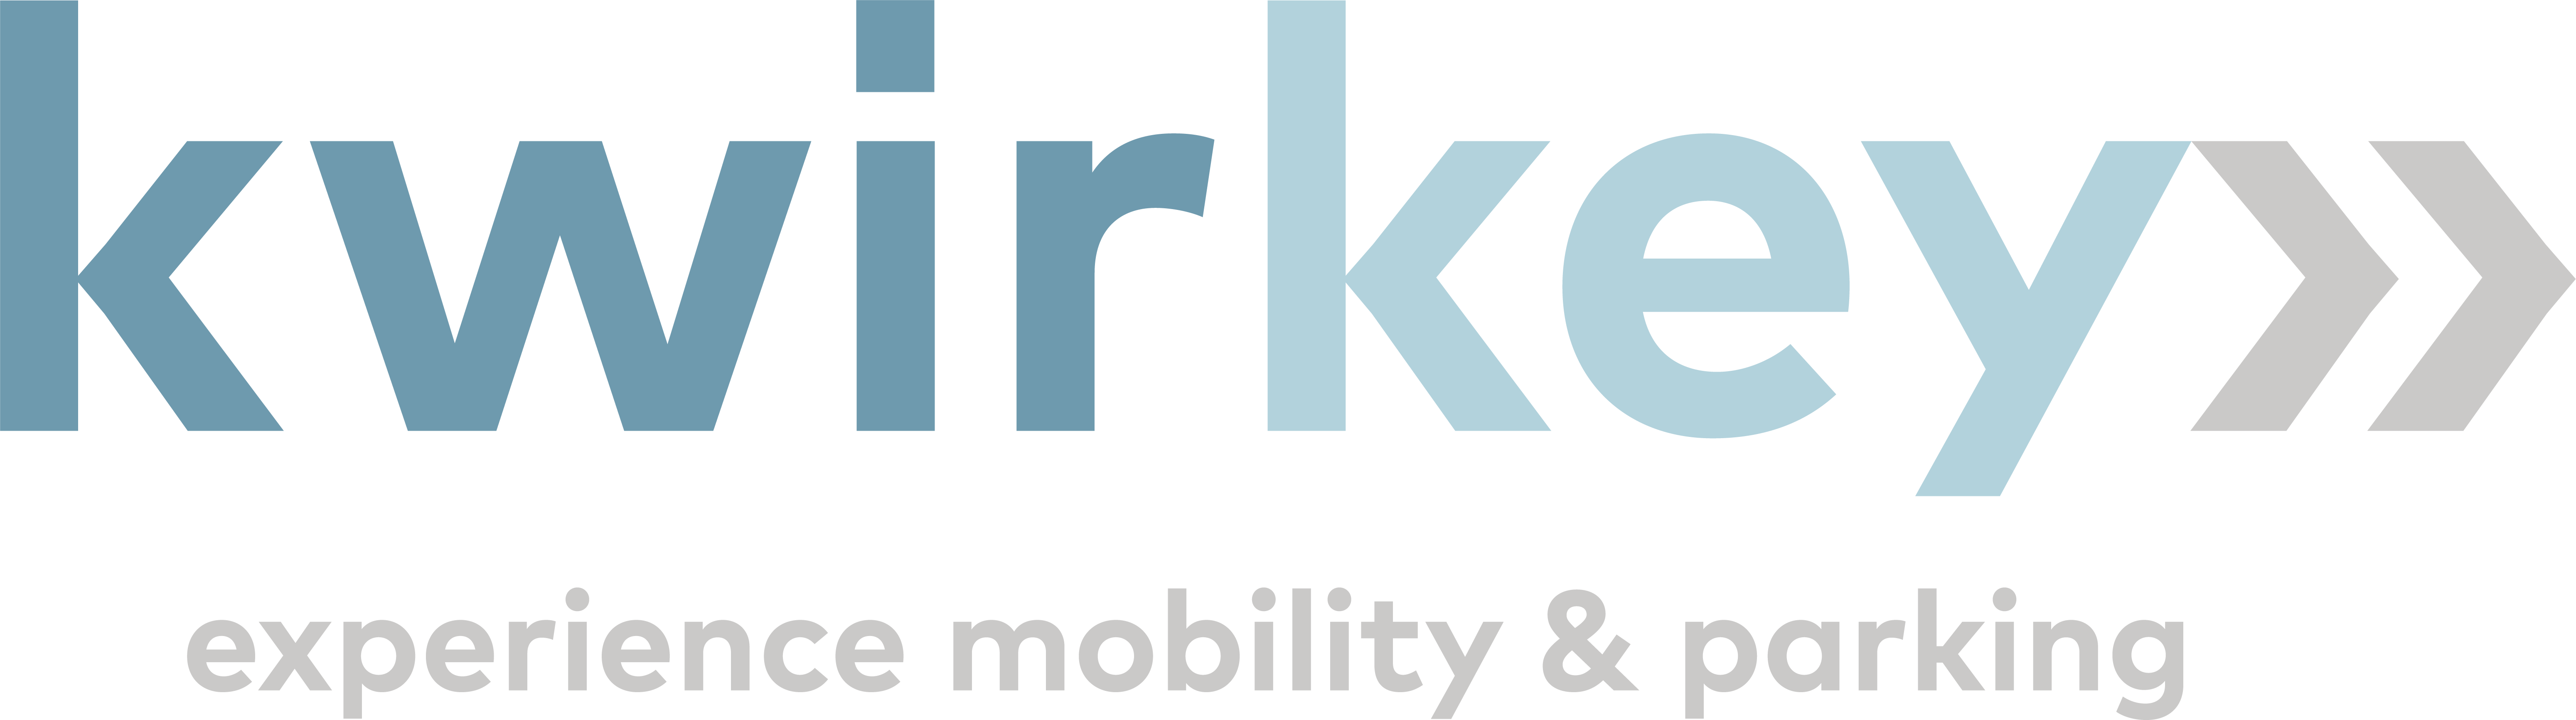 logo_kwirkey-min-1.png